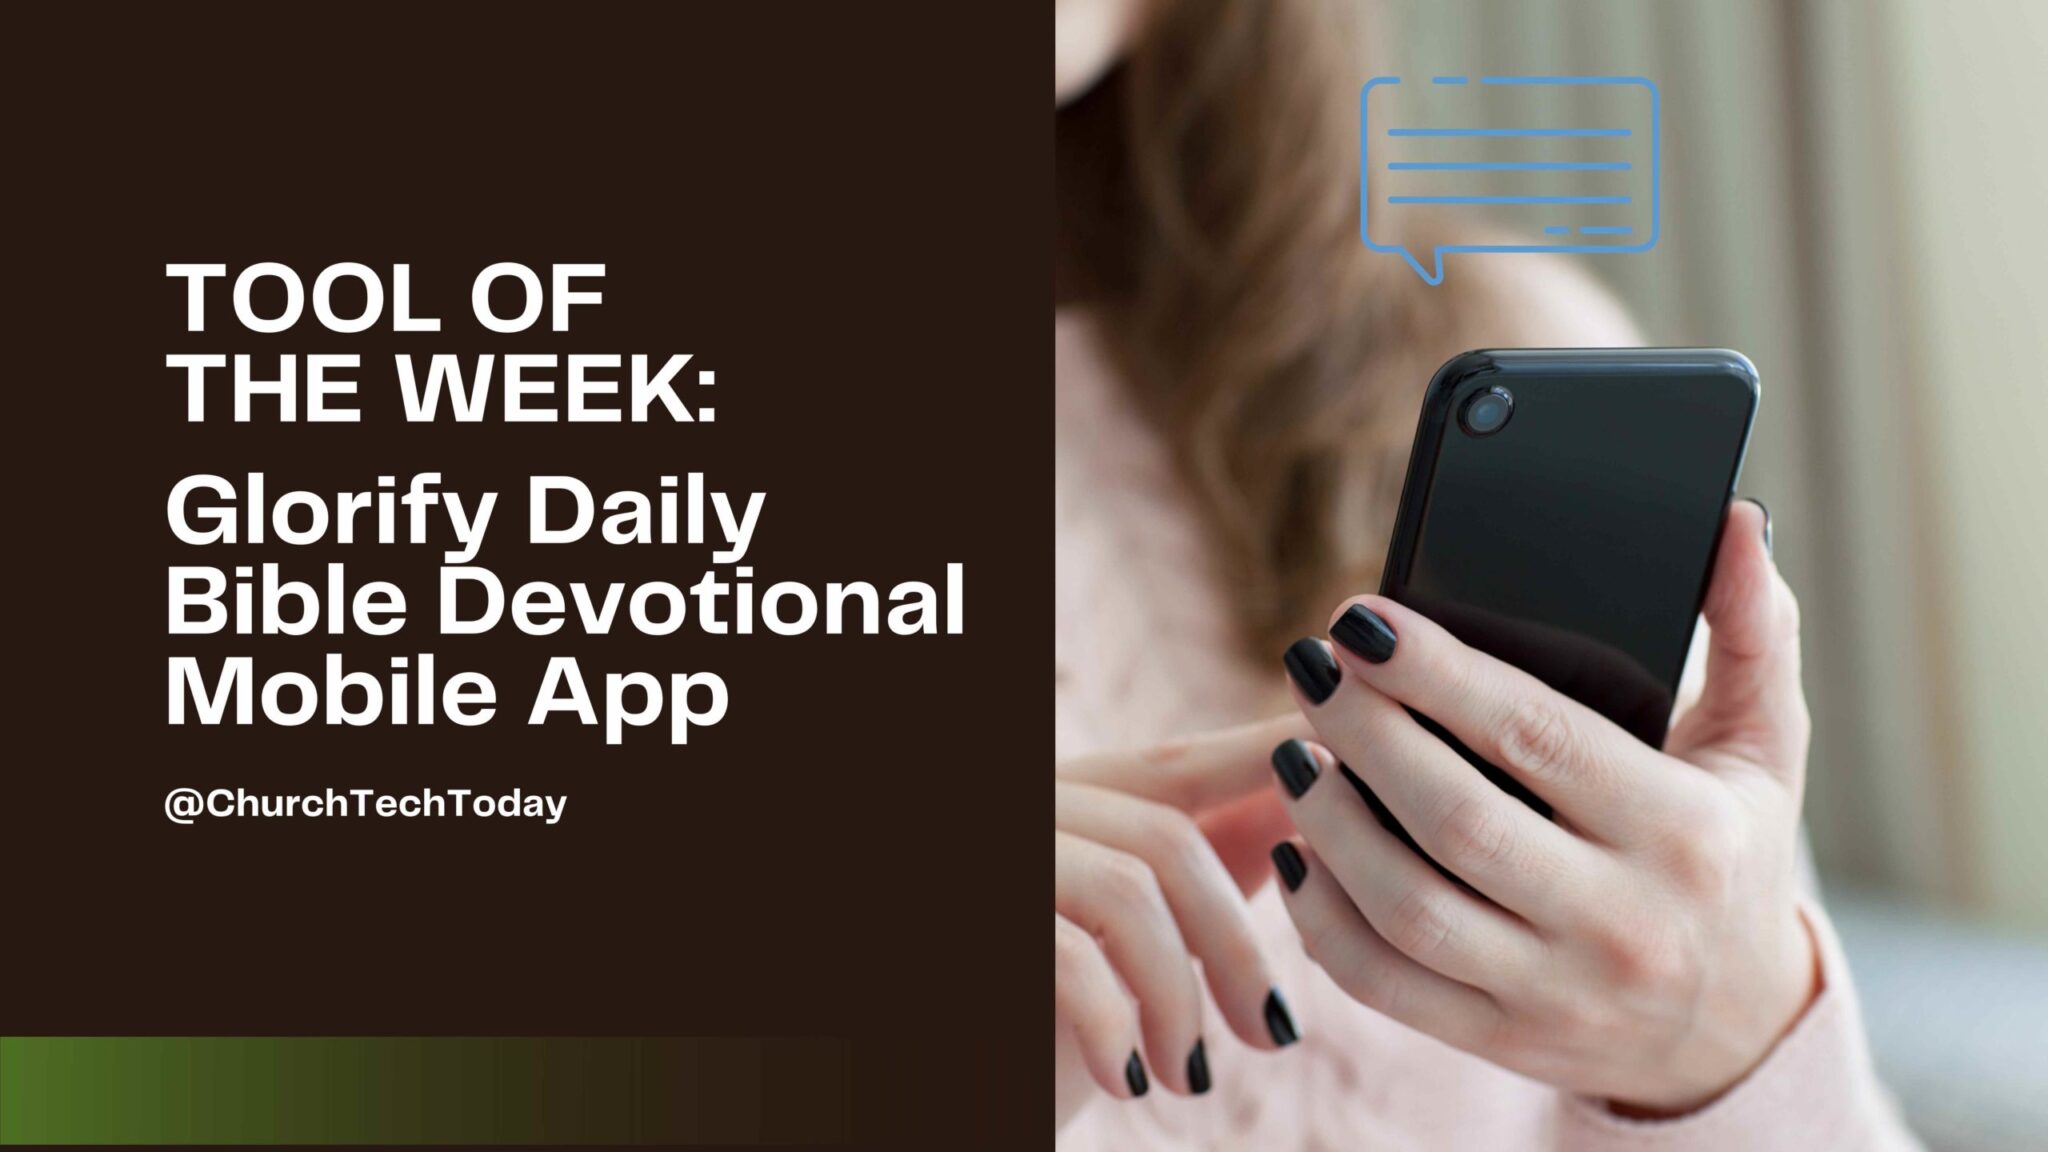 glorify daily devotional bible app